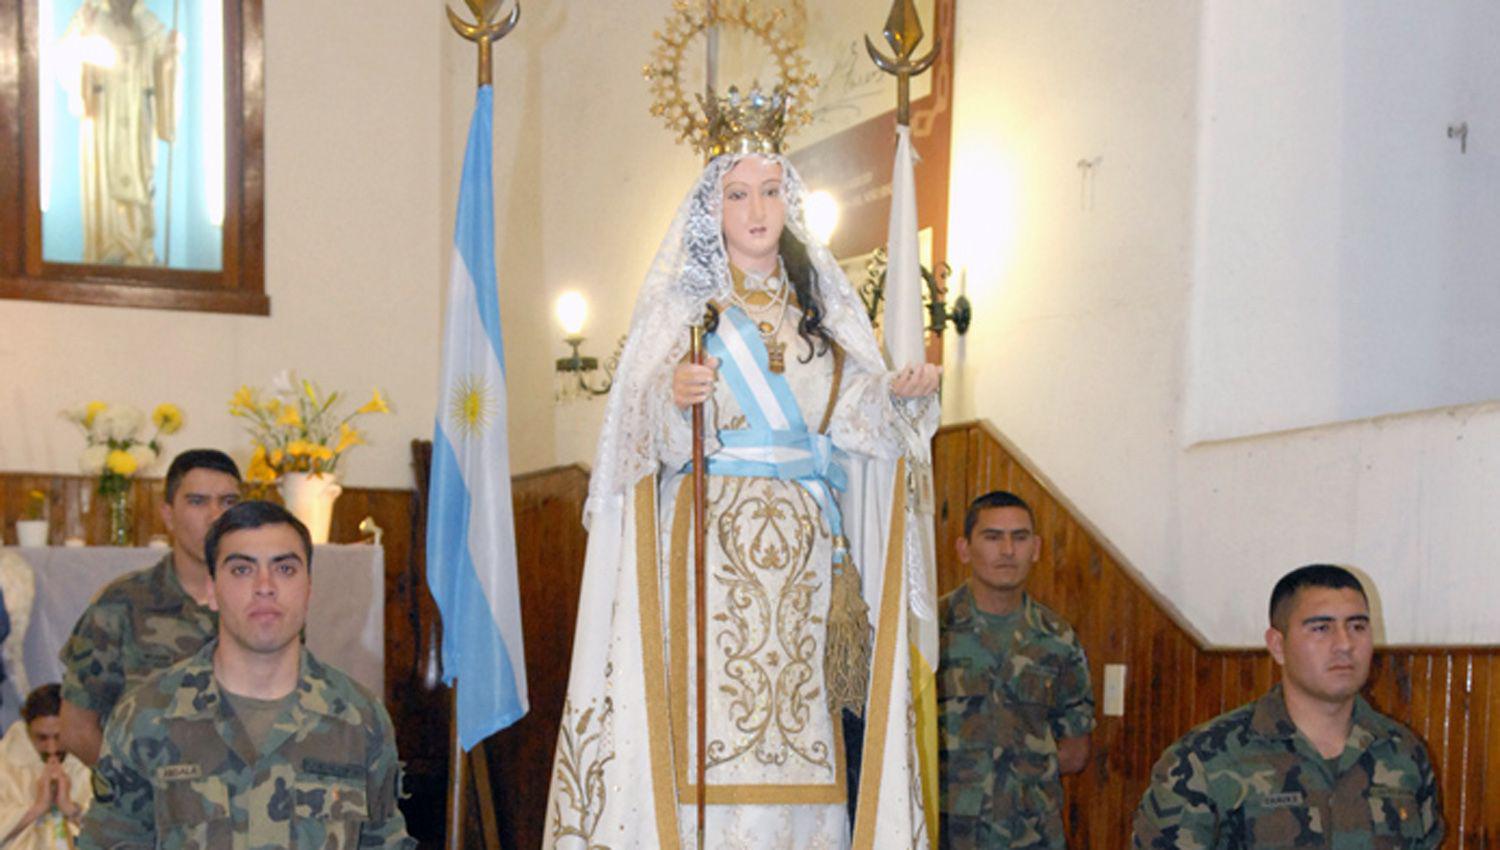 La virgen fue declarada Generala del Ejército Argentino